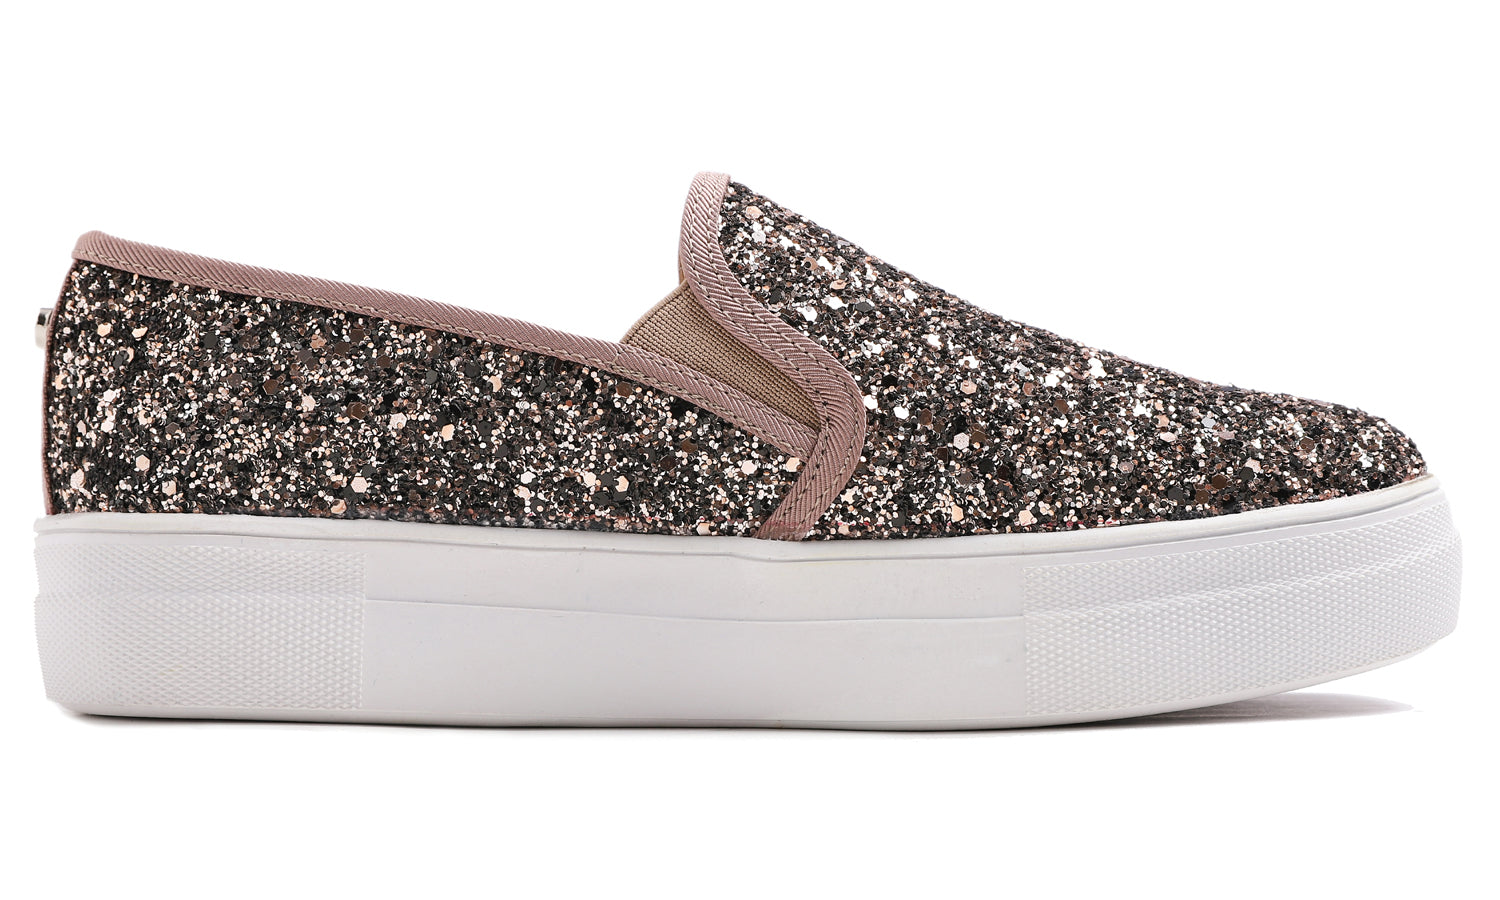 Feversole Women's Glitter Light Brown Platform Slip On Sneaker Casual Flat Loafers